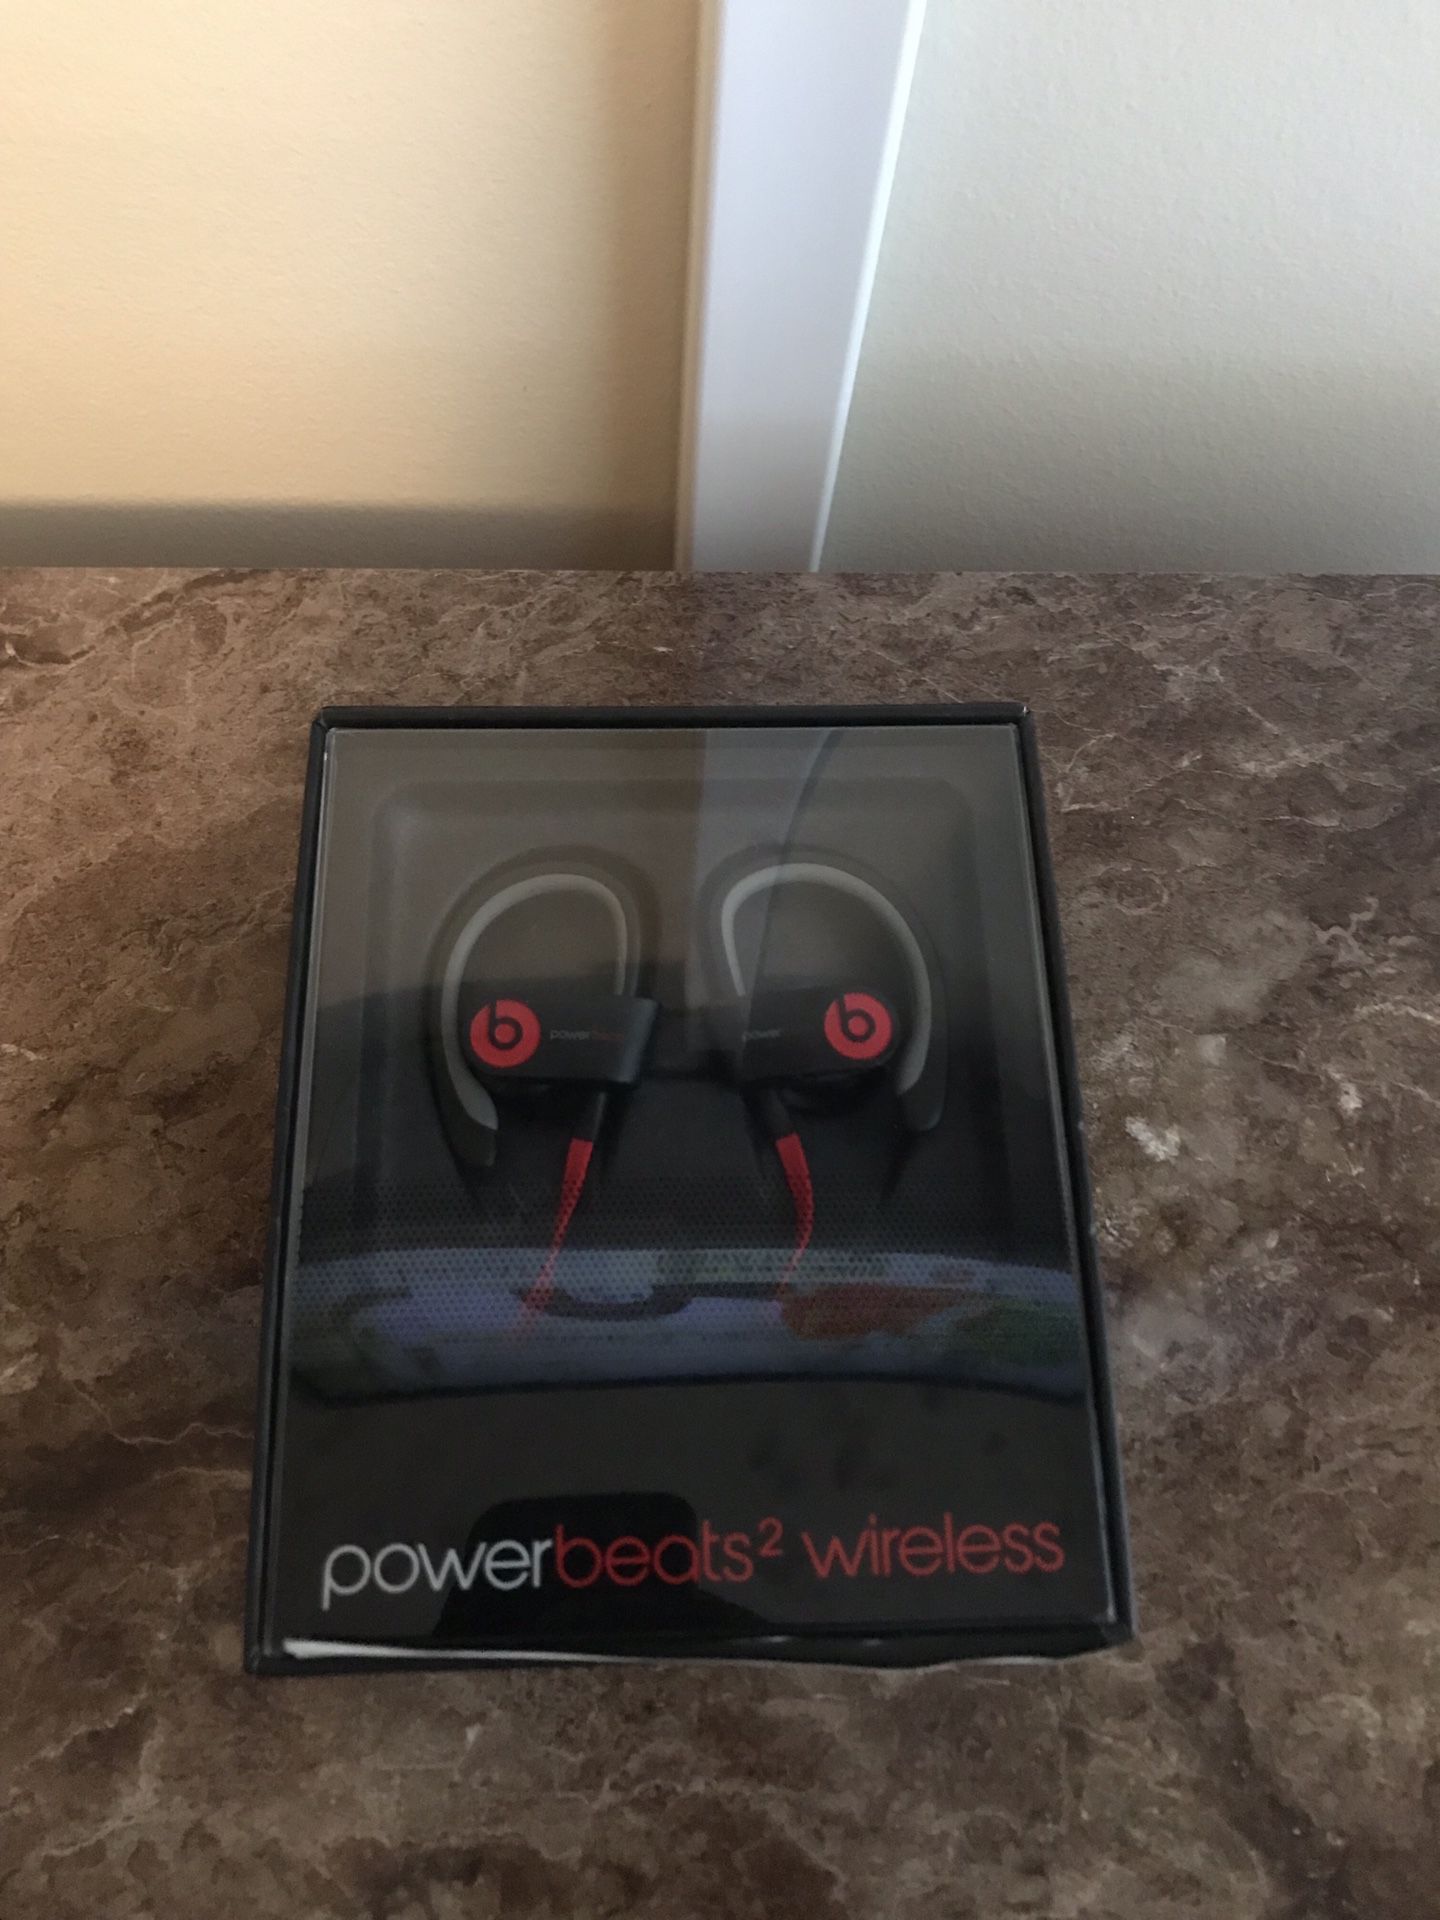 Beats PowerBeats 2 Wireless earbuds